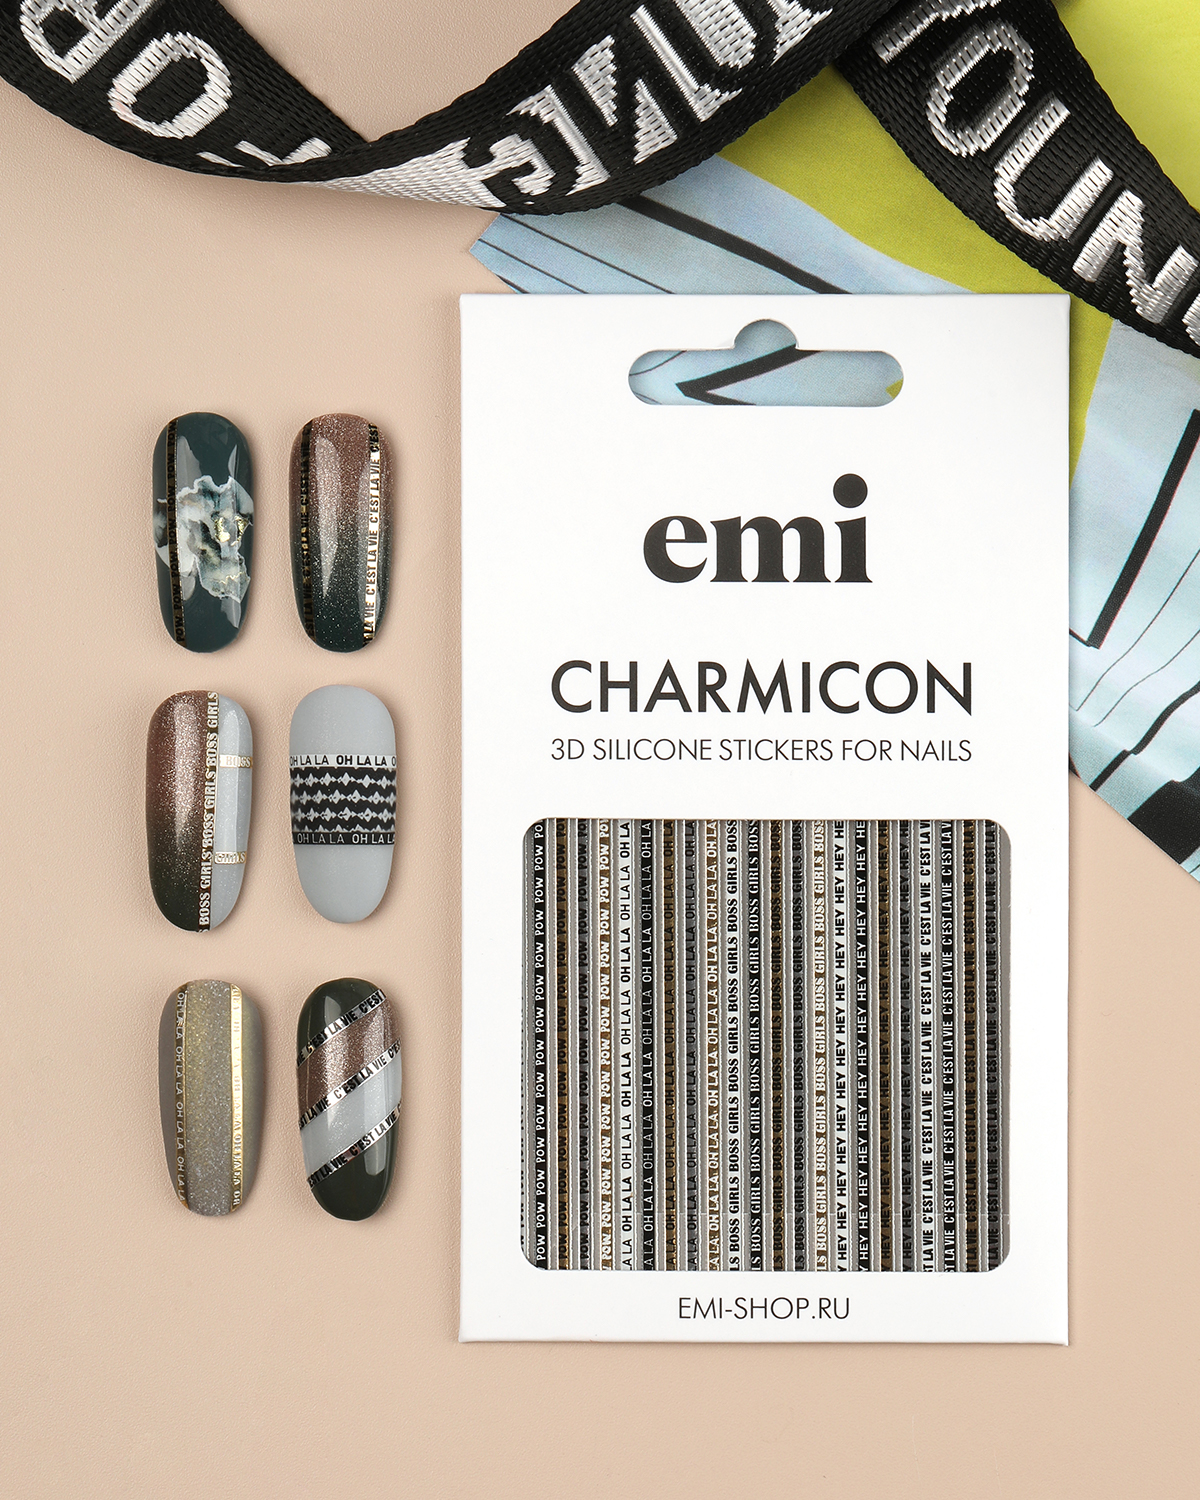 Объемные наклейки для дизайна ногтей EMi Charmicon 3D Silicone Stickers №244 Oh la la наклейки объемные щенячий патруль